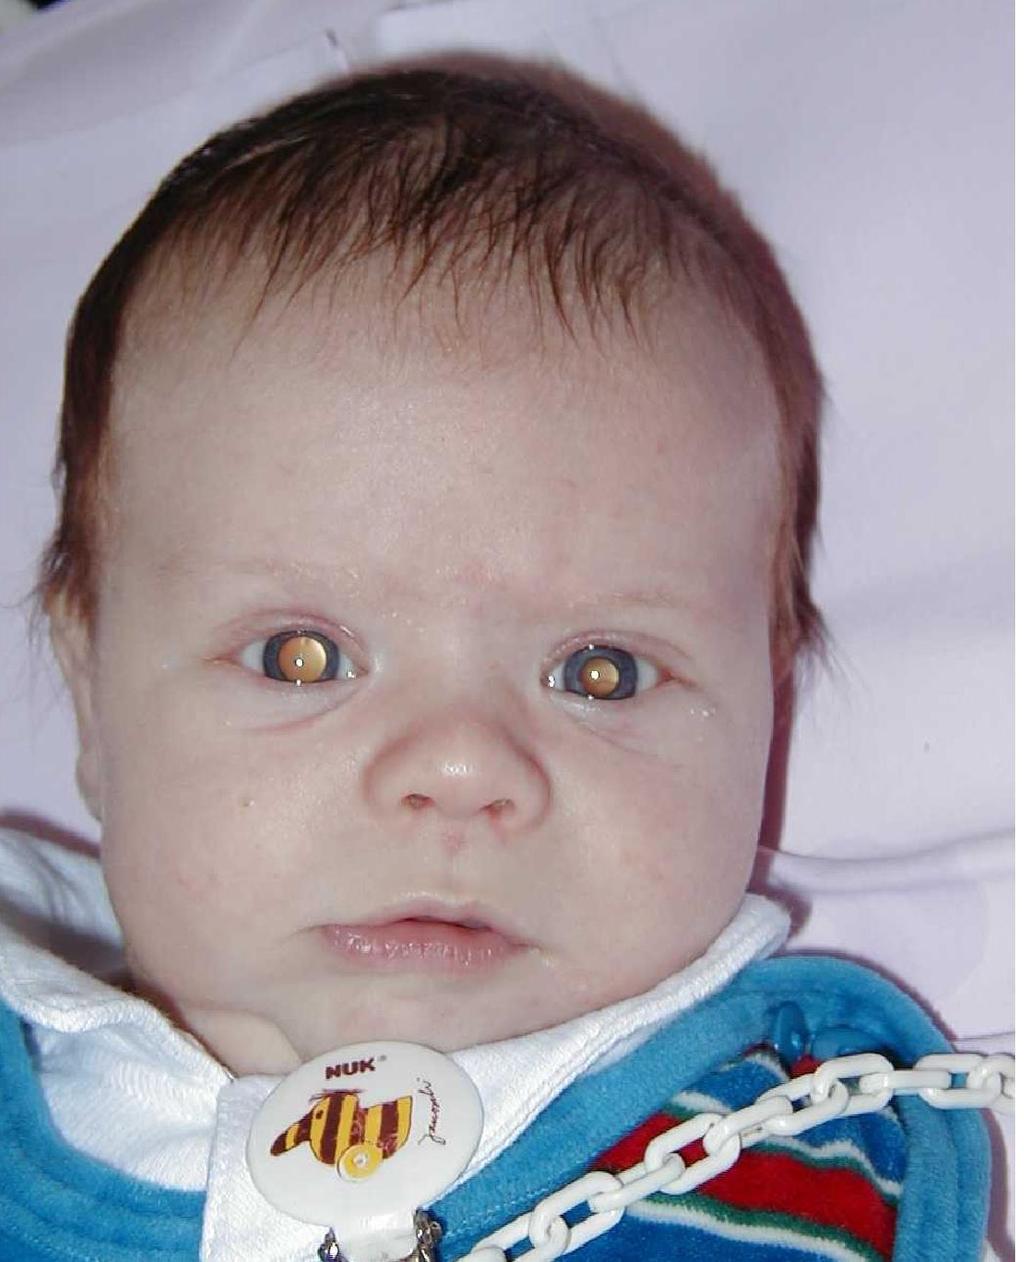 Bilateral retinoblastoma very young children multiple tumors in both eyes hereditary